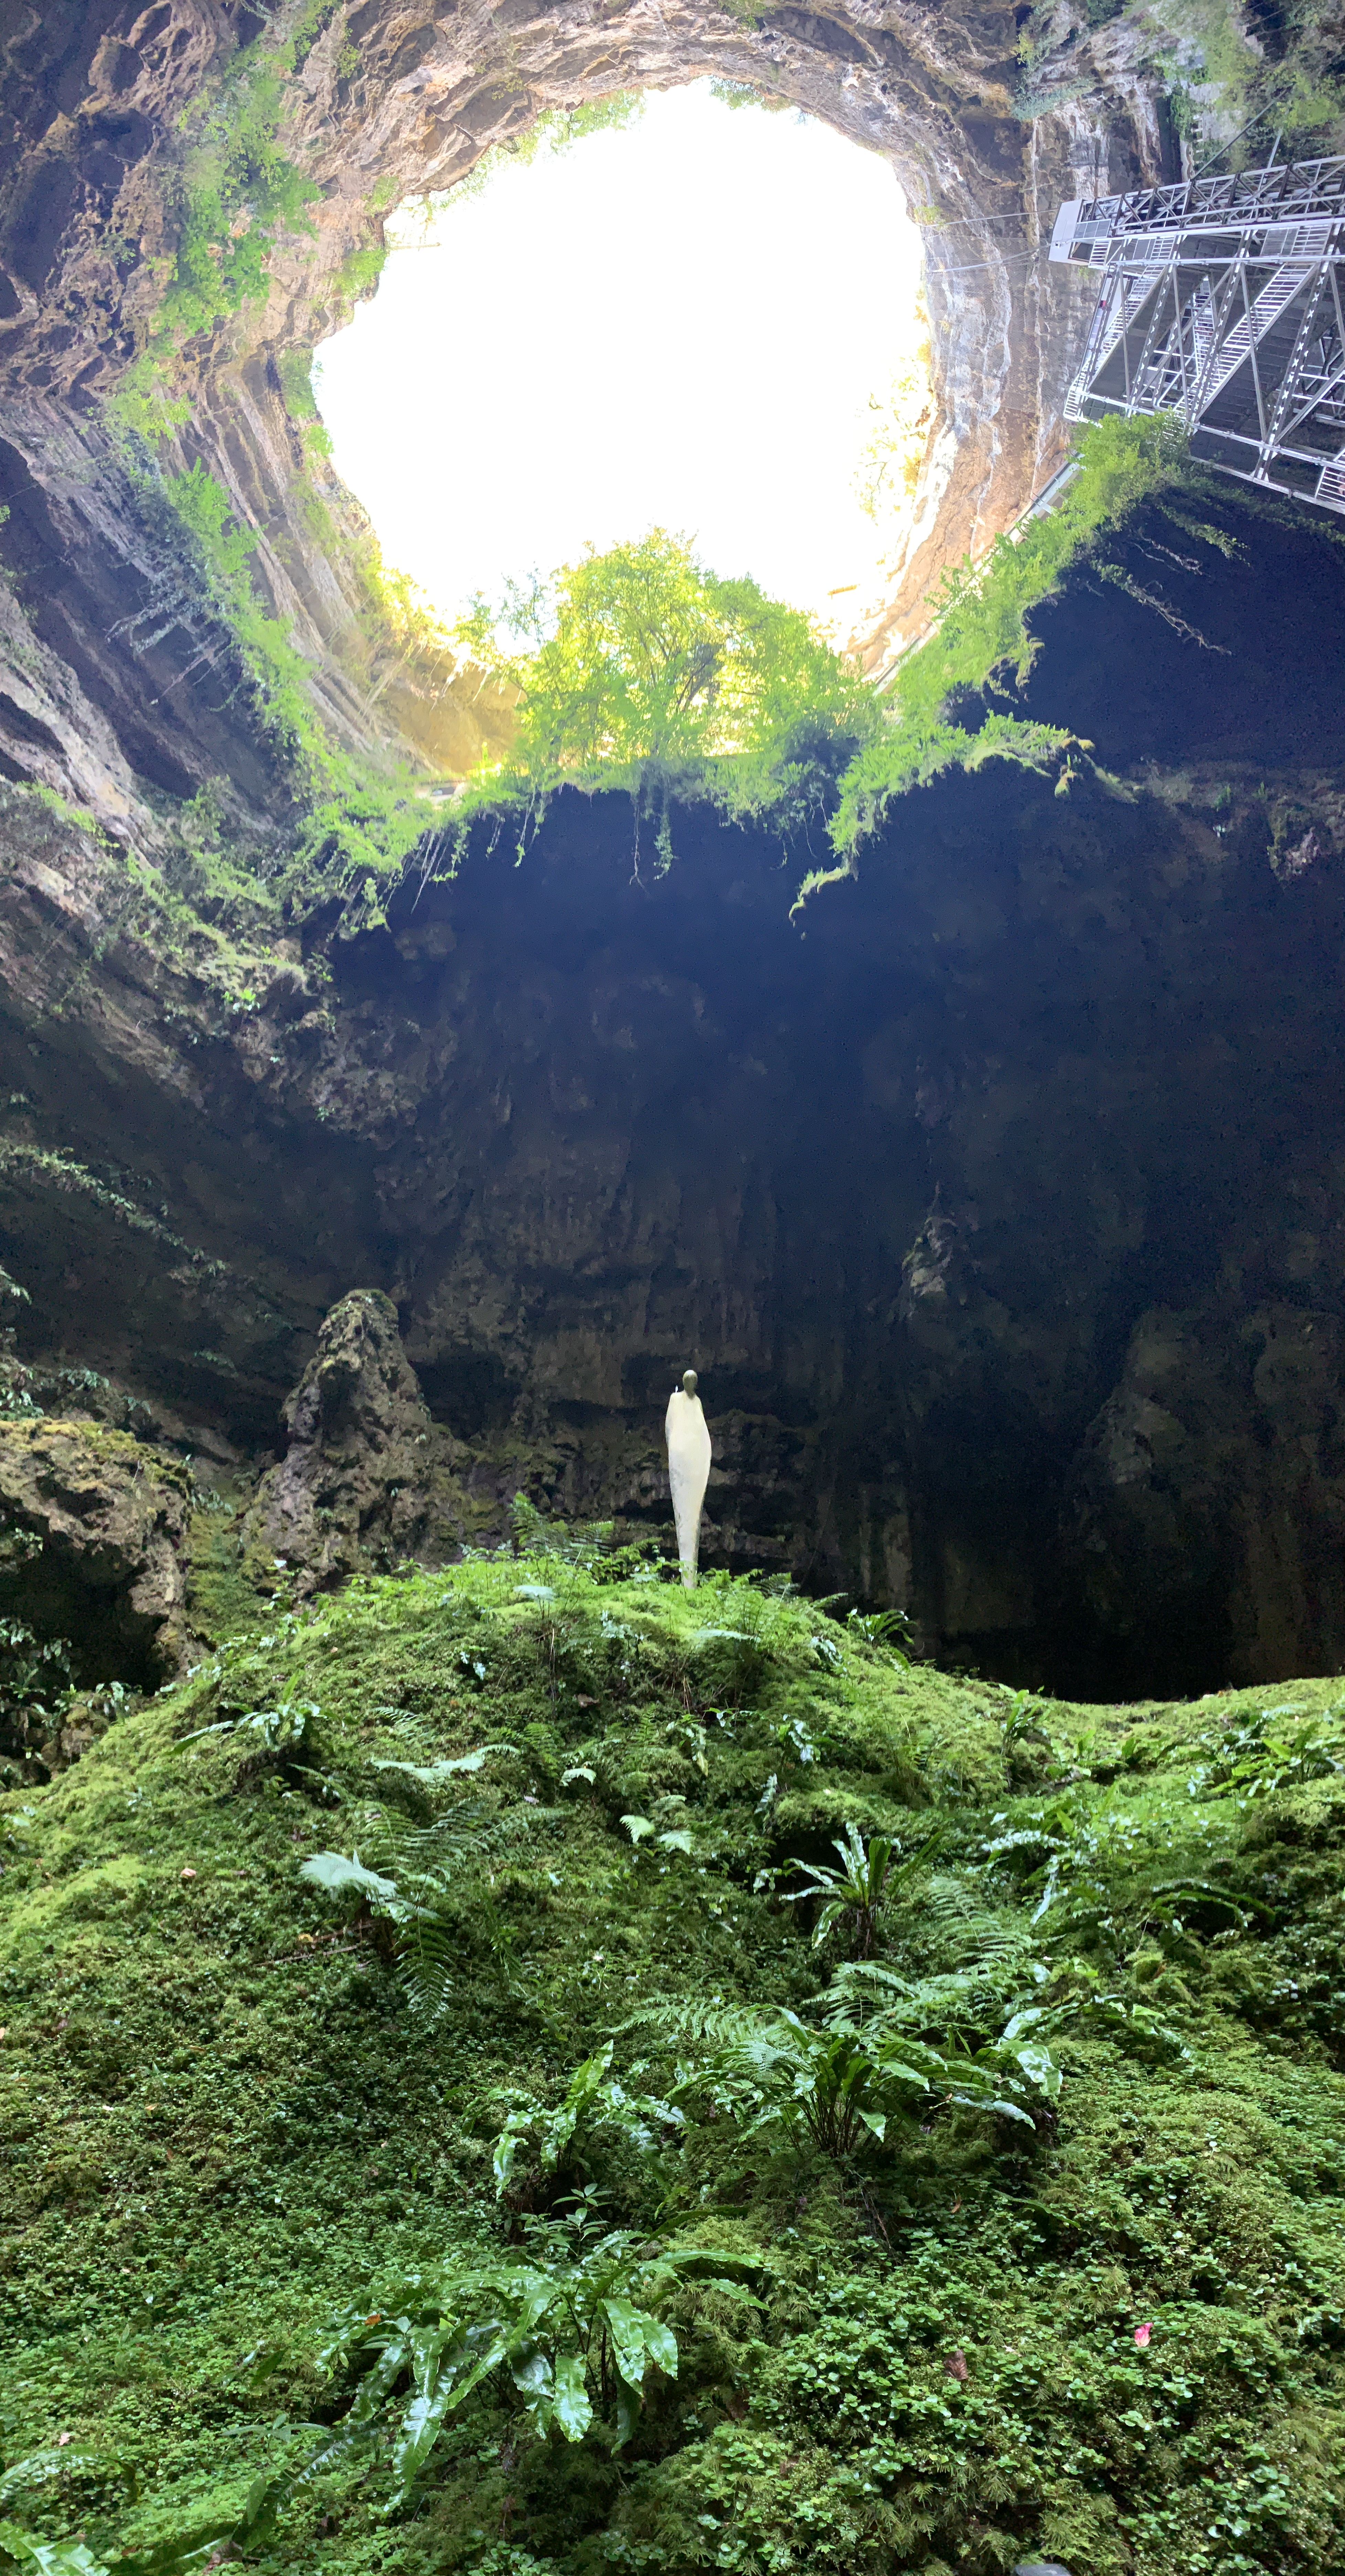 Dins la terra hi ha vida · Grottes de Padirac FOTO:  Vania Vidal Diaz